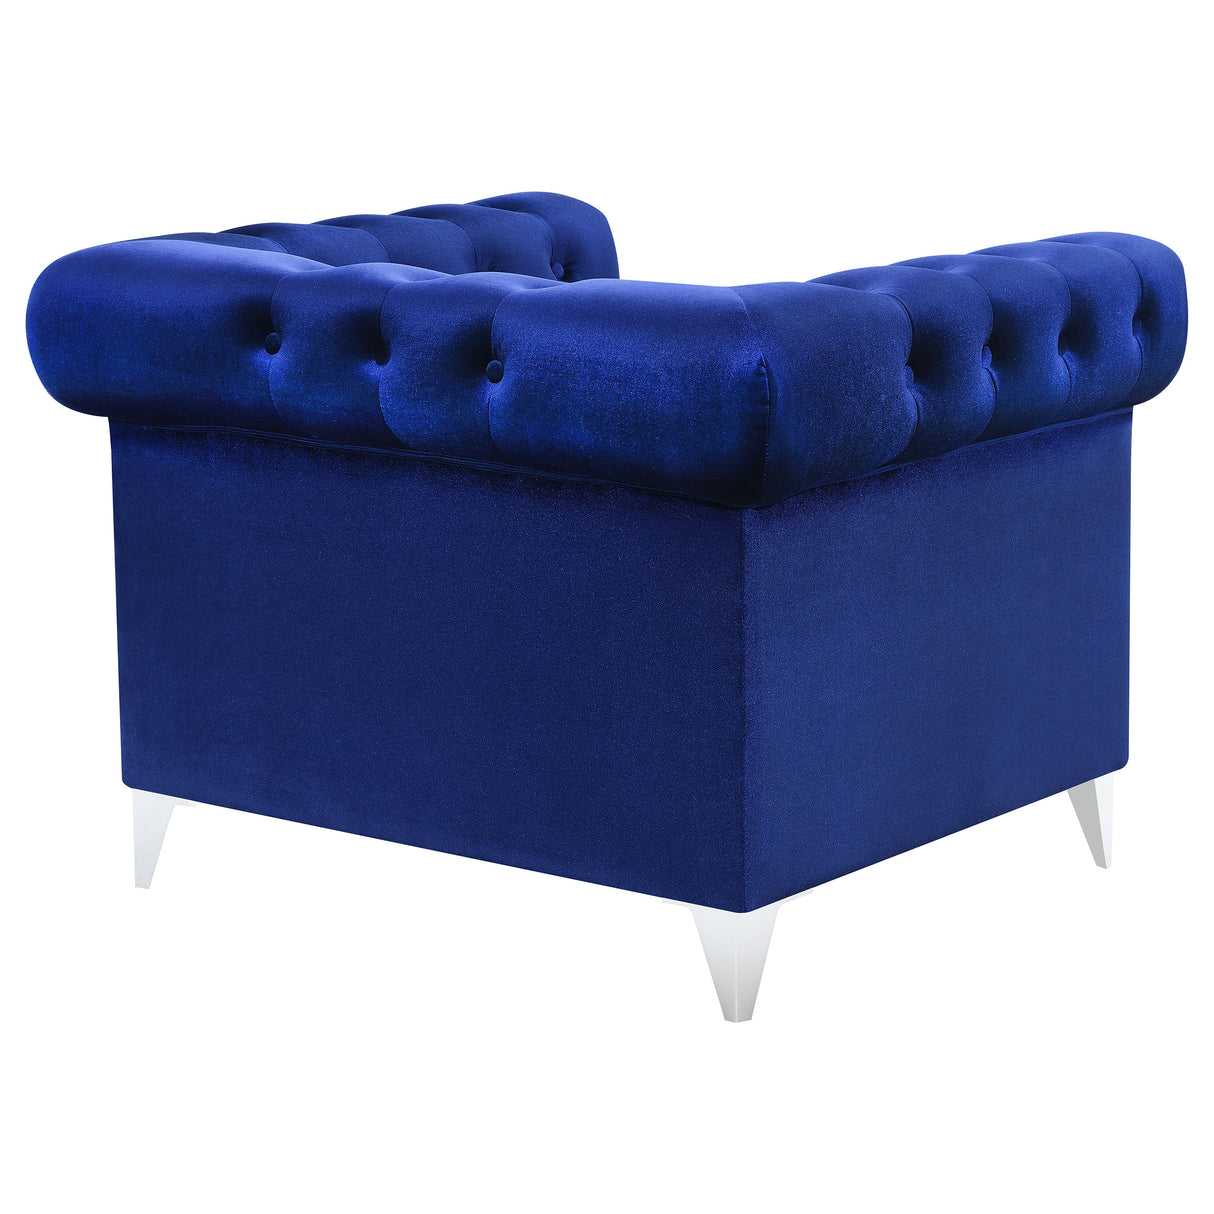 Chair - Bleker Tufted Tuxedo Arm Chair Blue